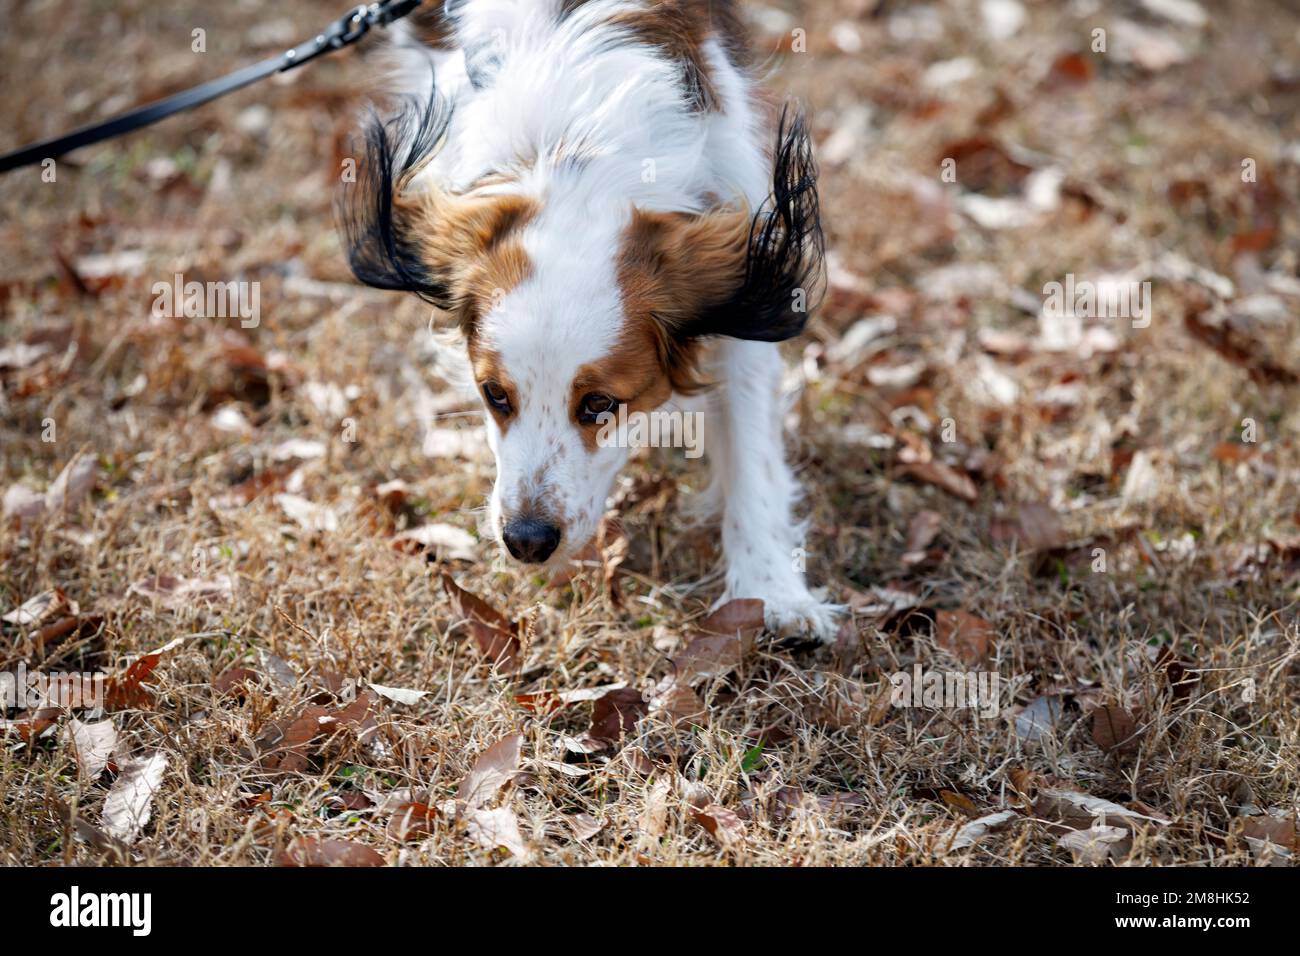 Buon cane purebred kooiker che corre verso la macchina fotografica. Foto Stock